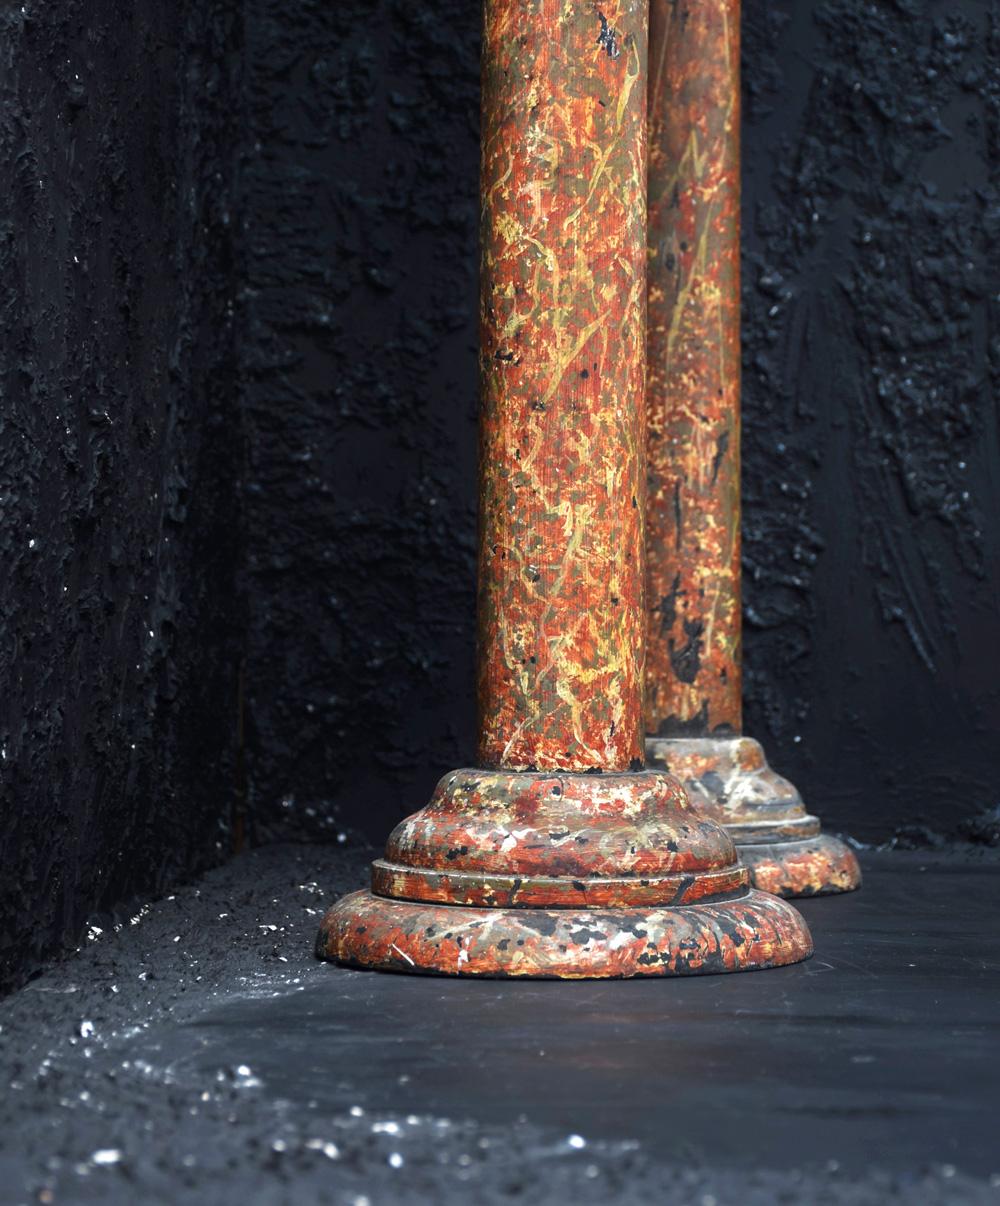 Paar Säulen aus Kunstmarmor, um 1880.

Bei diesem Los handelt es sich um ein außergewöhnlich seltenes Originalpaar von Säulen mit Kunstmarmoreffekt aus dem Jahr 1880. Sie sind ein wunderbares Beispiel für dekorative Ausstellungsstücke aus dem 19.